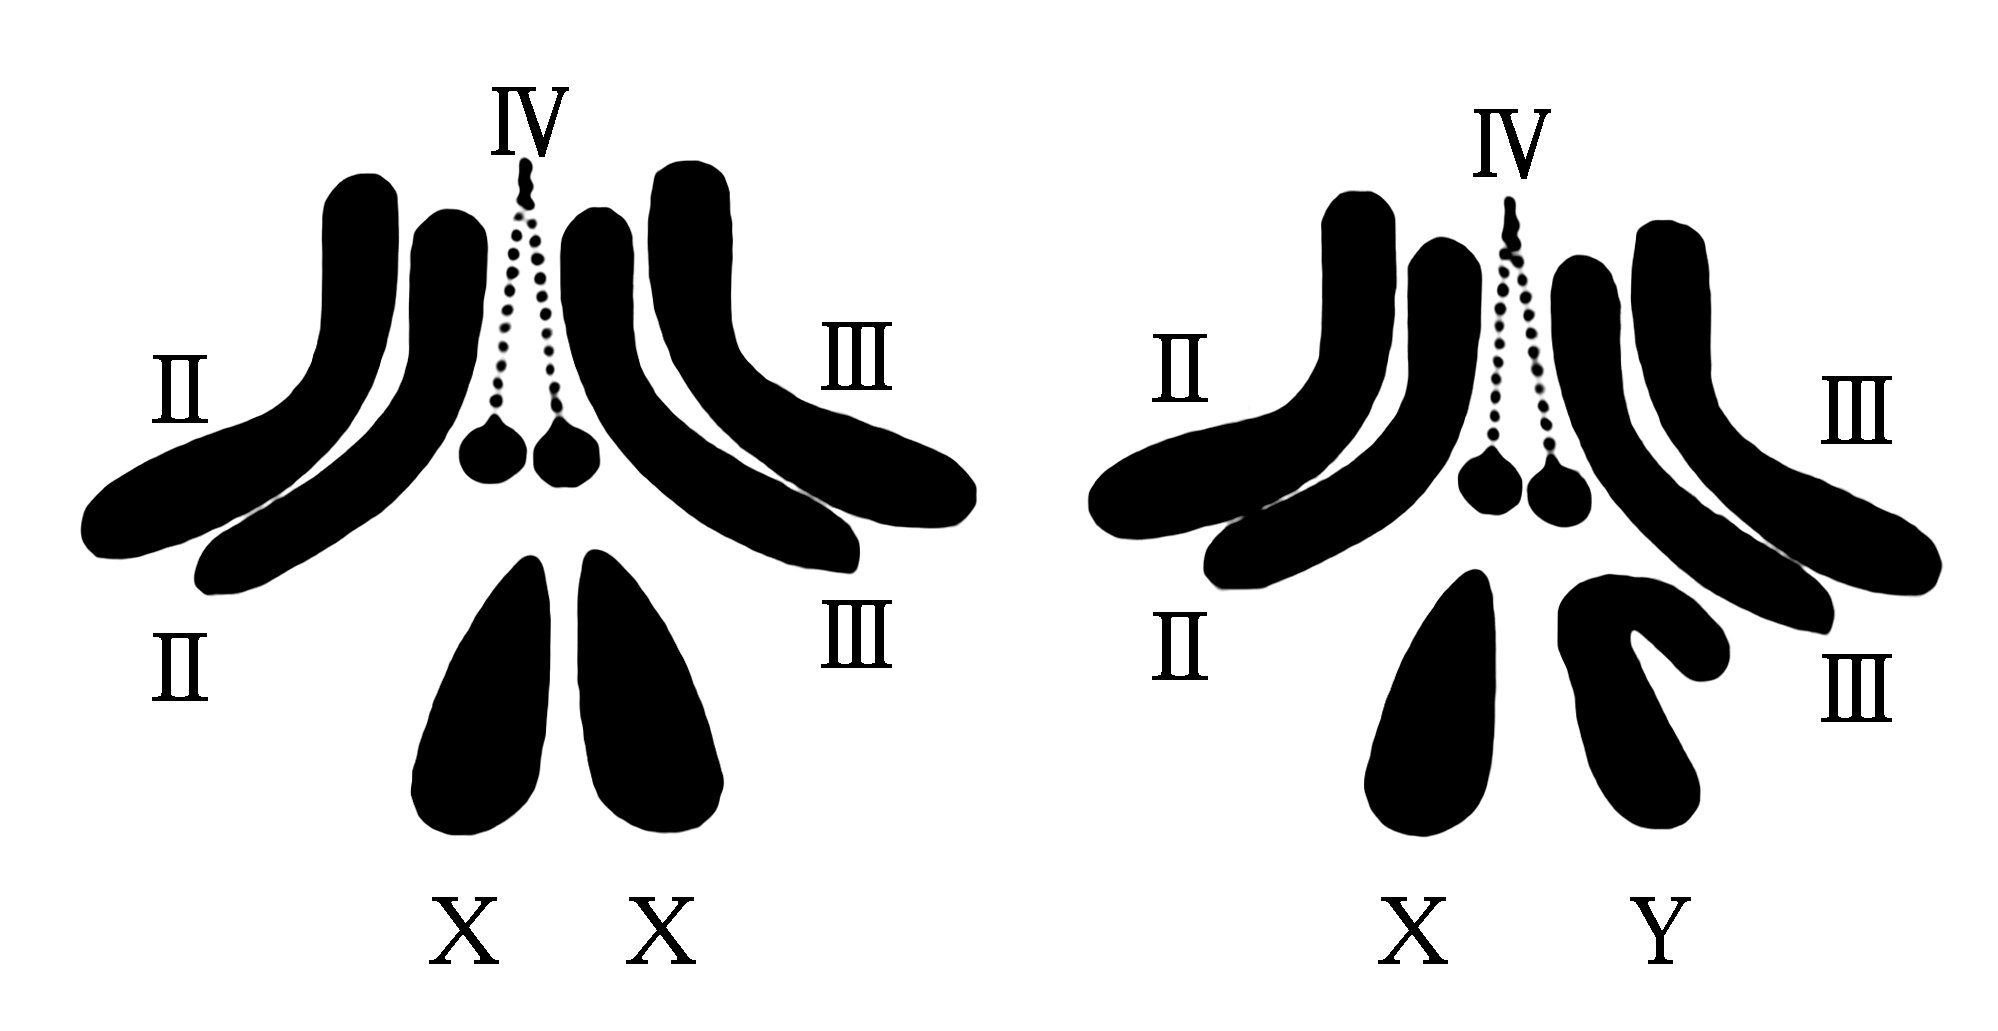 染色体的结构示意图图片